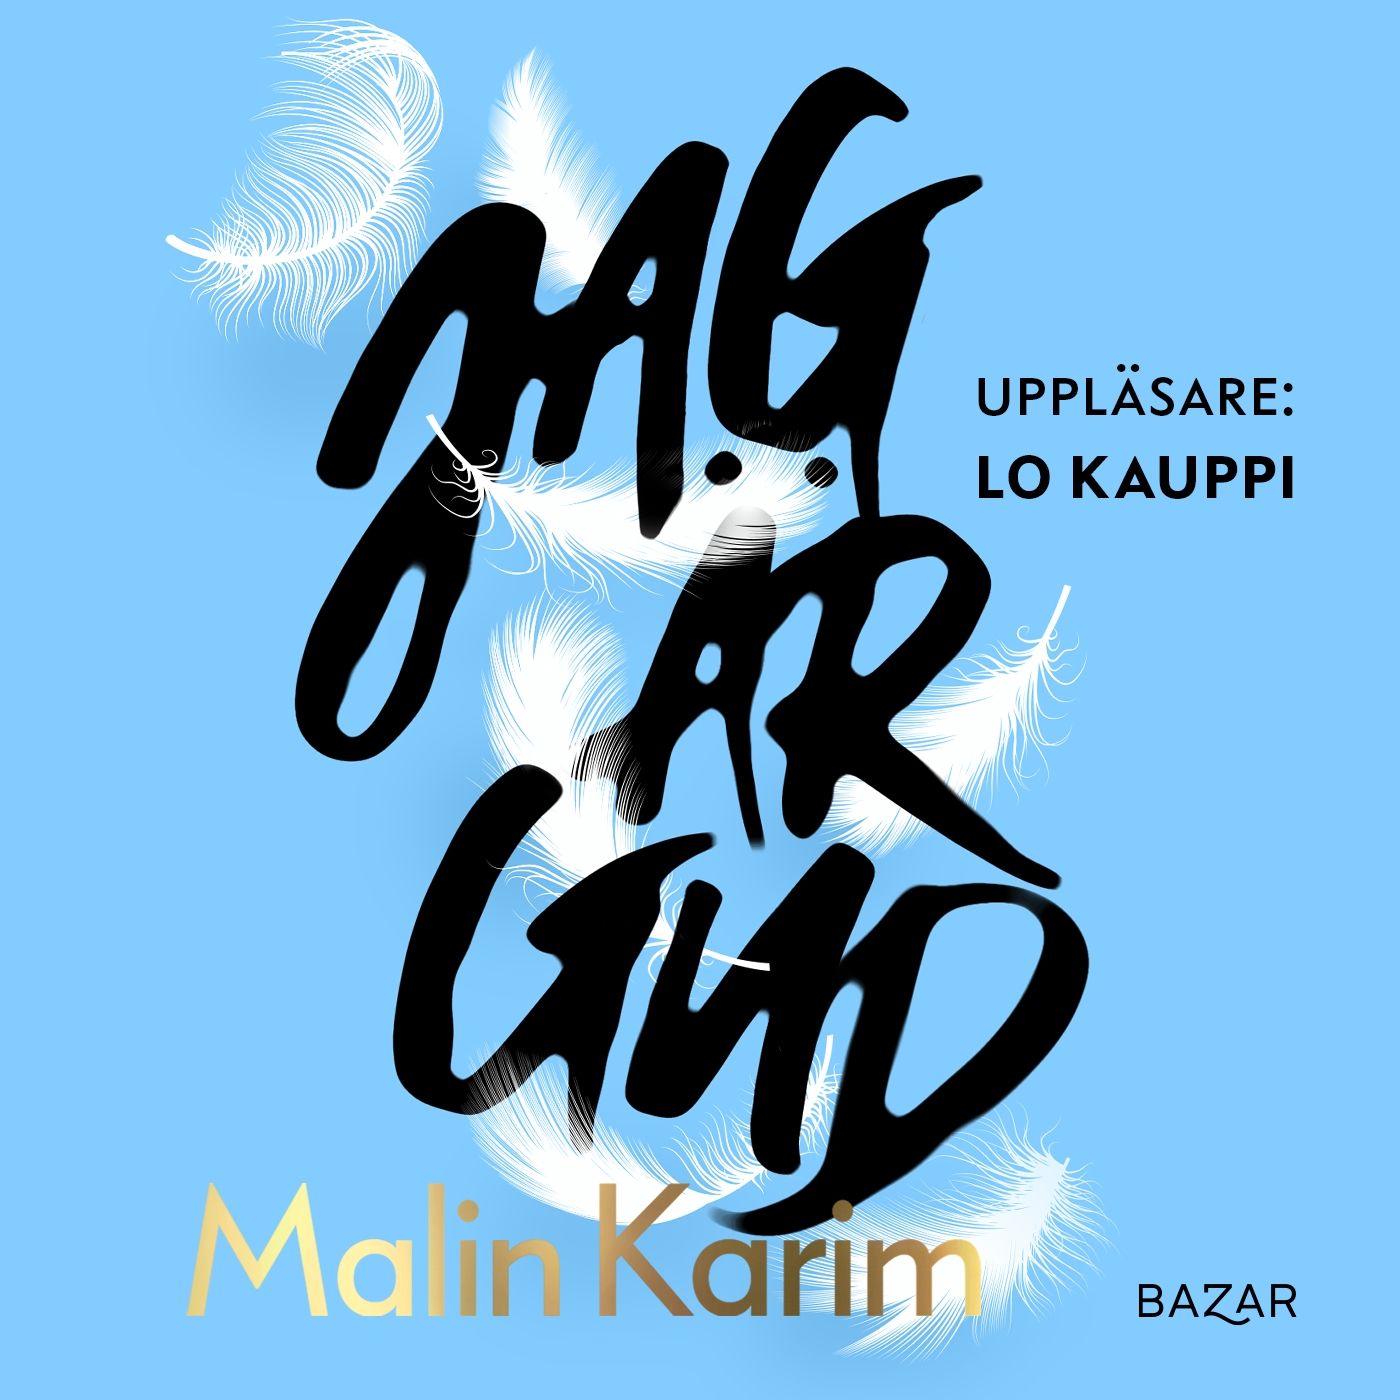 Jag är Gud, audiobook by Malin Karim